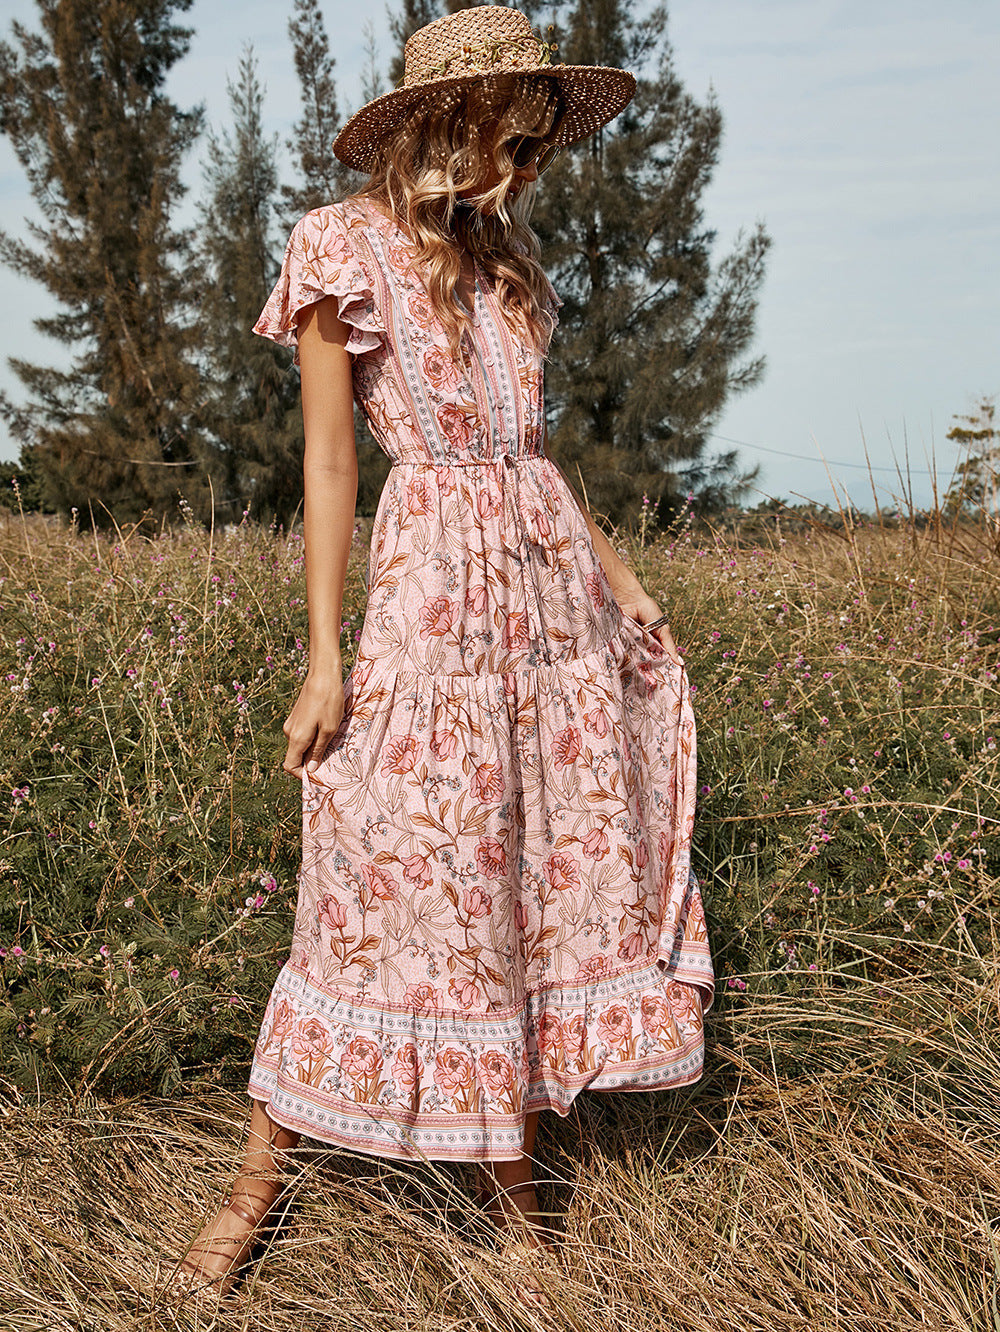 Boho Floral Maxi Dress, Bohemian Summer Dress For Women